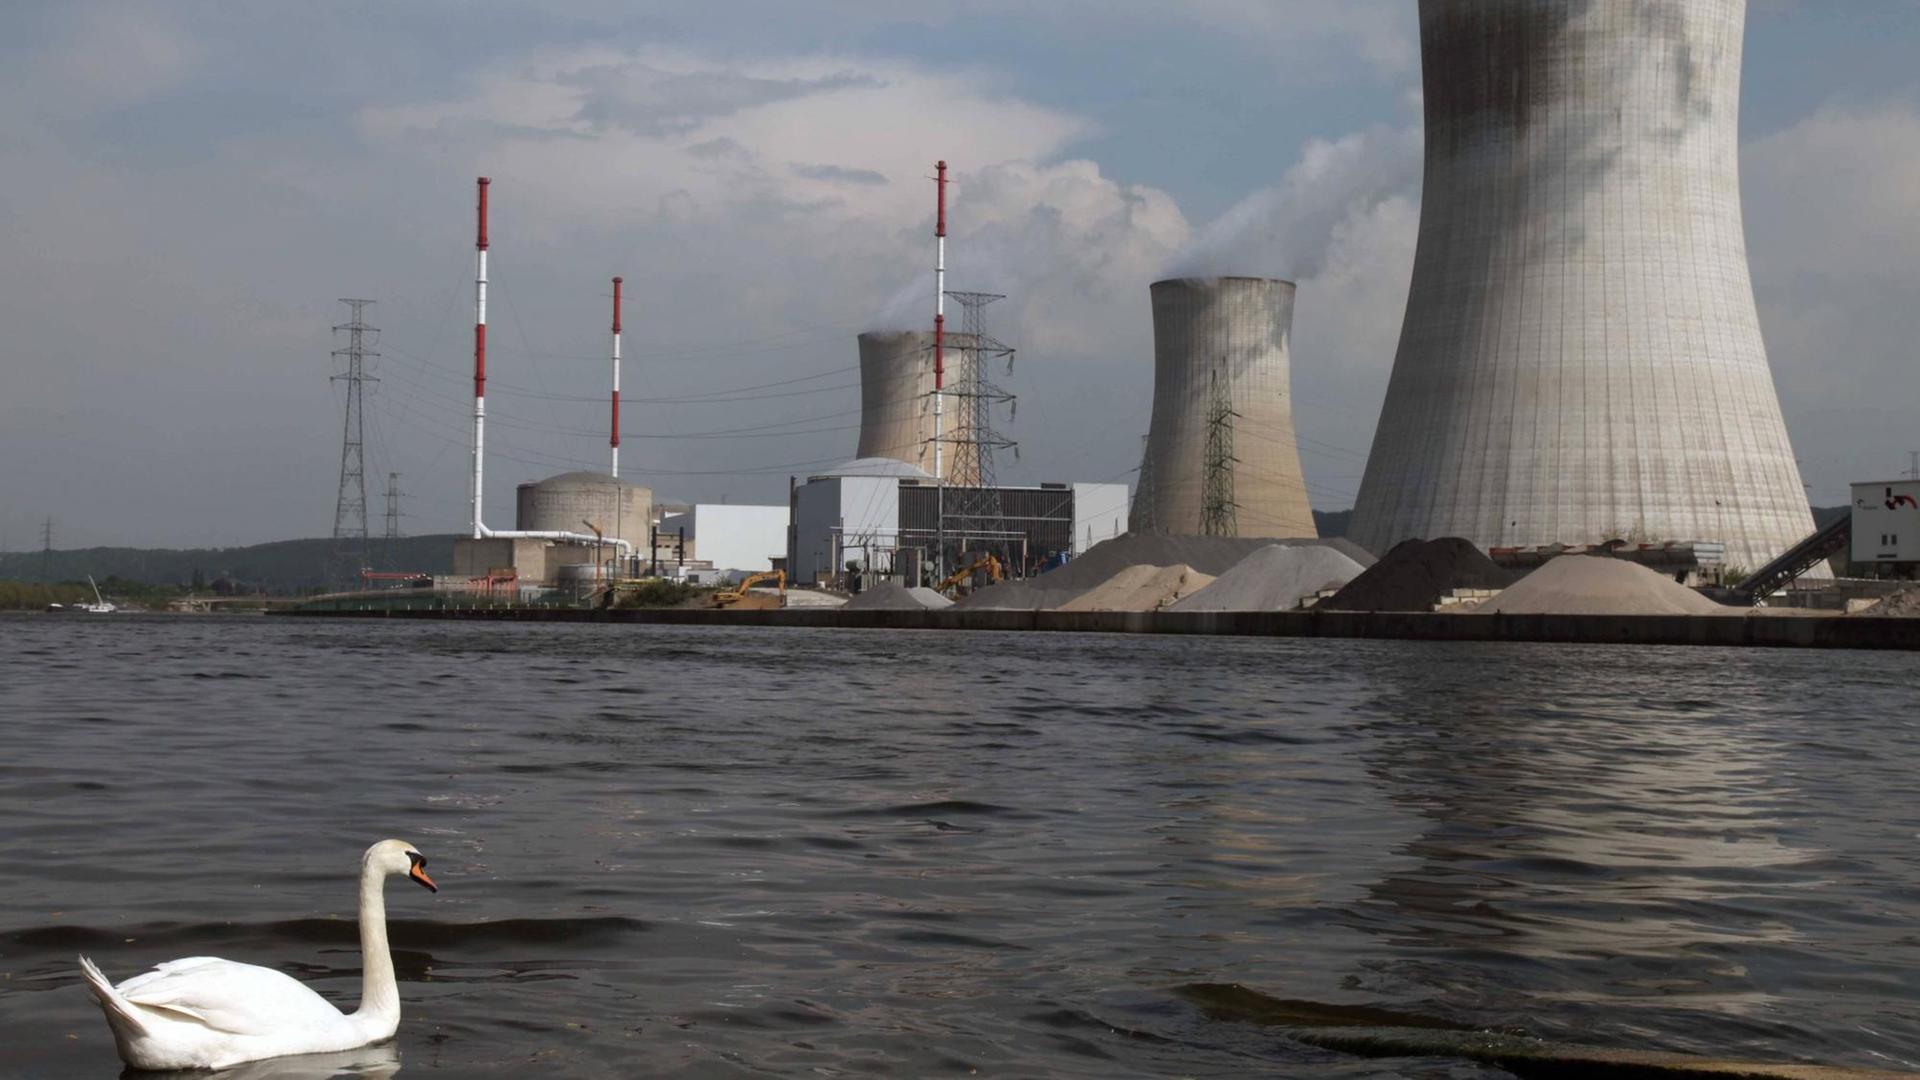 Blick auf das Atomkraftwerk Tihange in Belgein vom Flussufer der Maas aus betrachtet - am 23.04.2011. Links im Vordergrund ein Schwan.